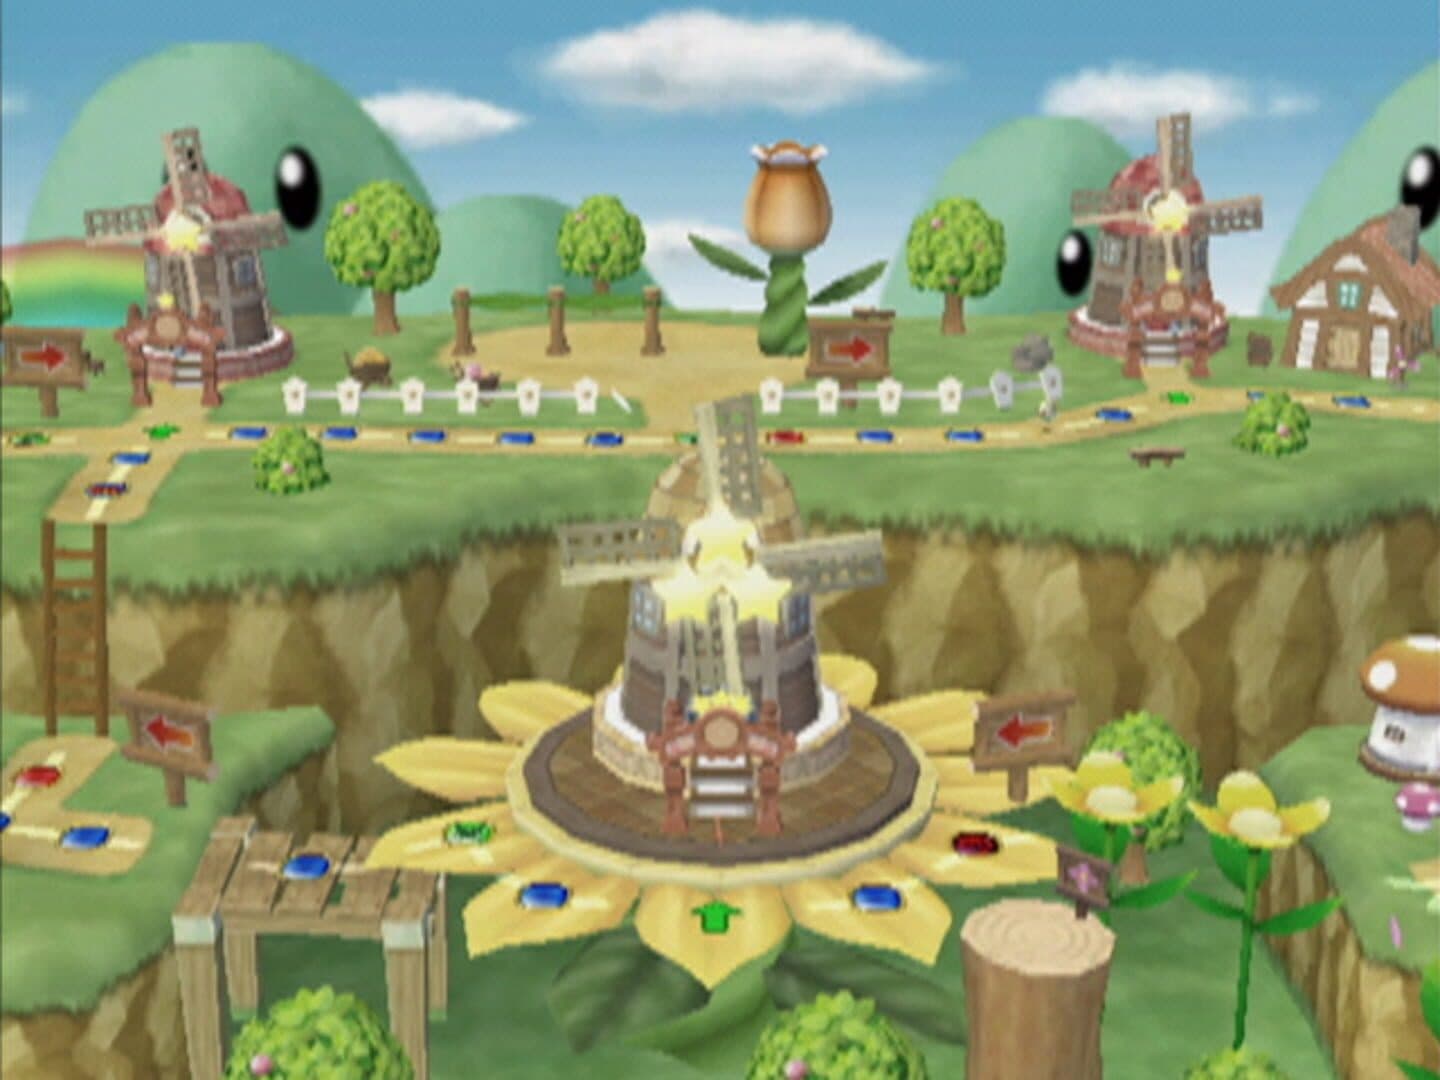 Mario Party 7 Image